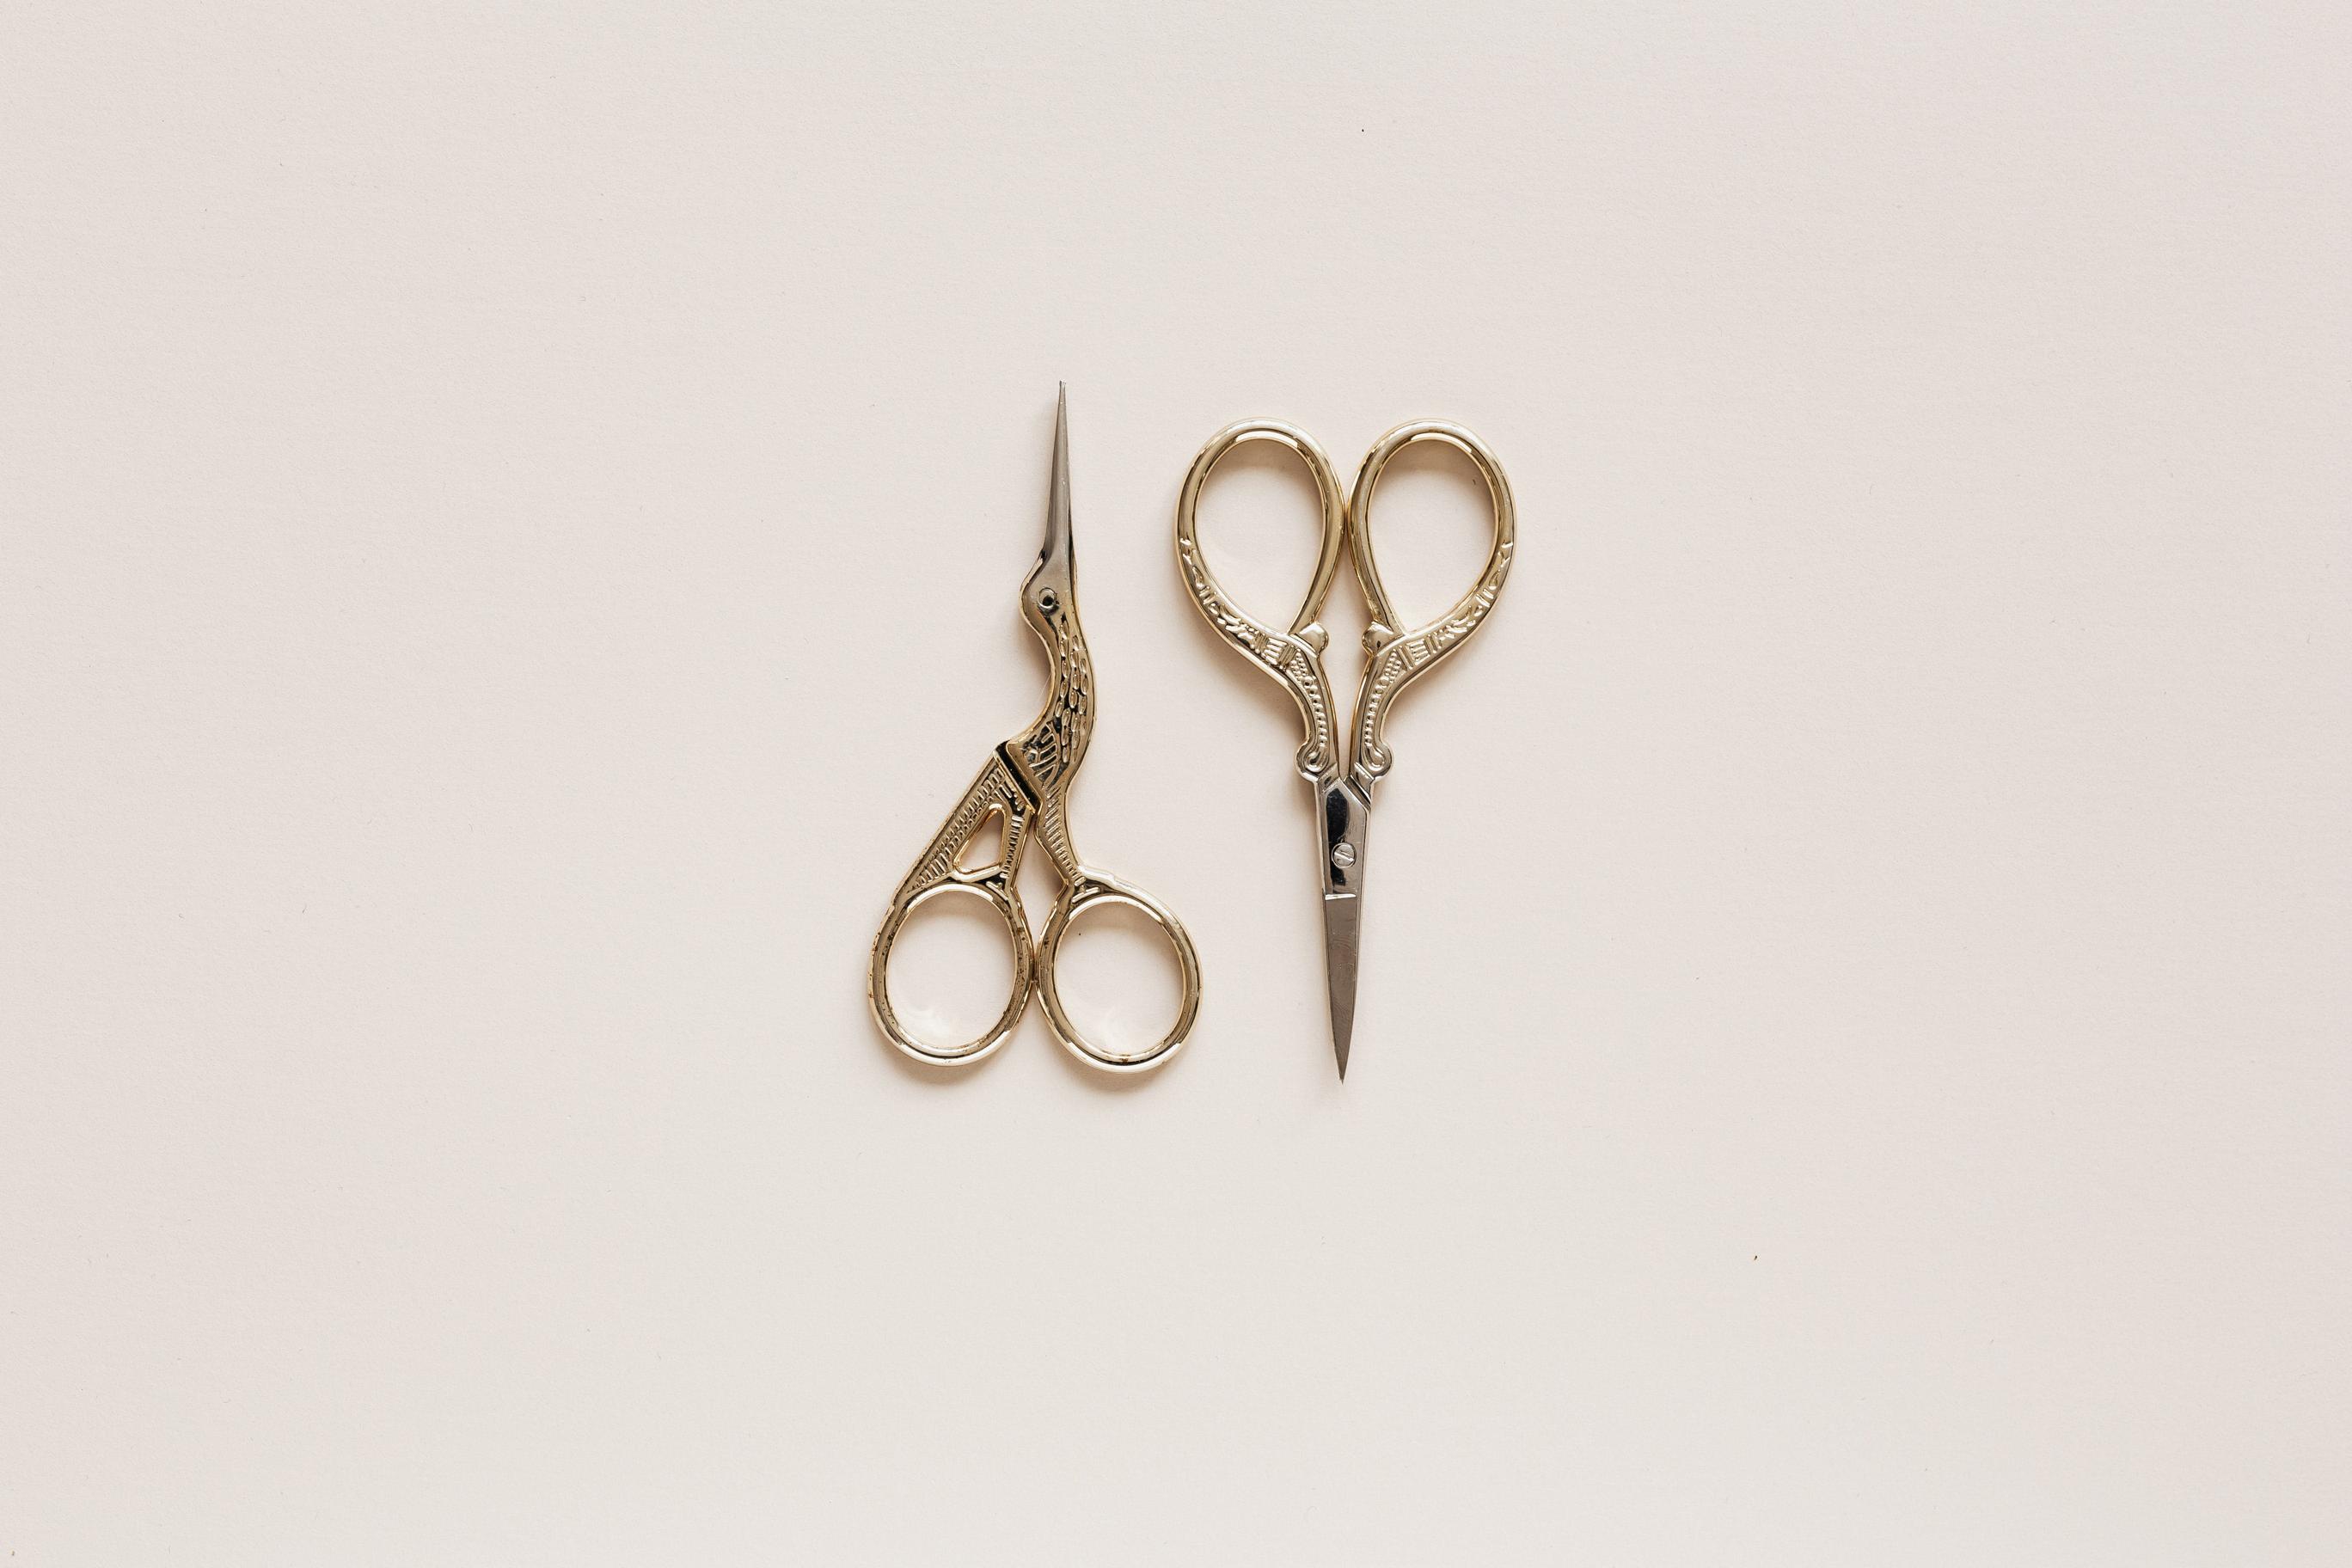 Narzędzia do cięcia i modelowania: szczypce, nożyce i pilniki w pracowni jubilerskiej